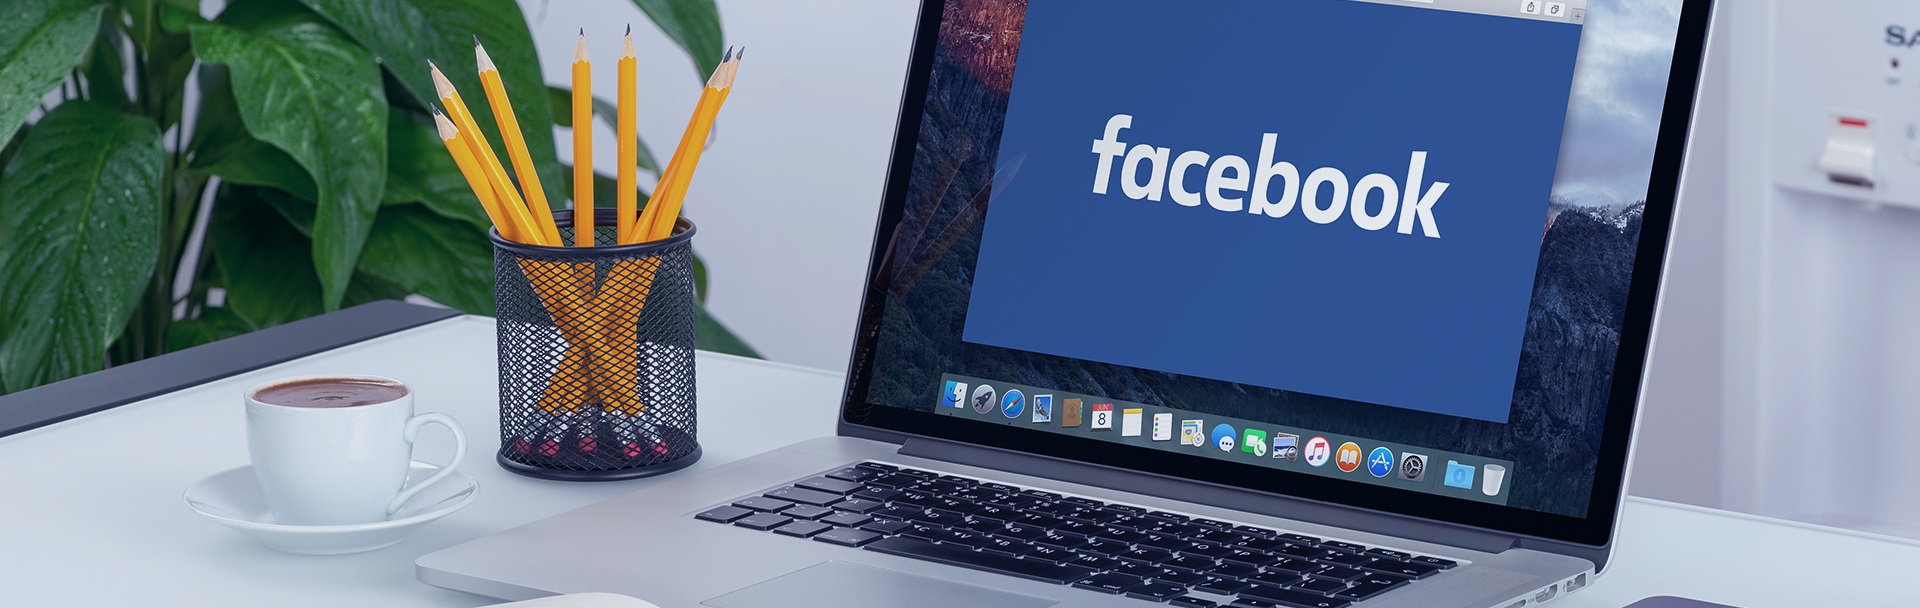 Bí quyết Marketing Facebook cải thiện nội dung Fanpage (P1)